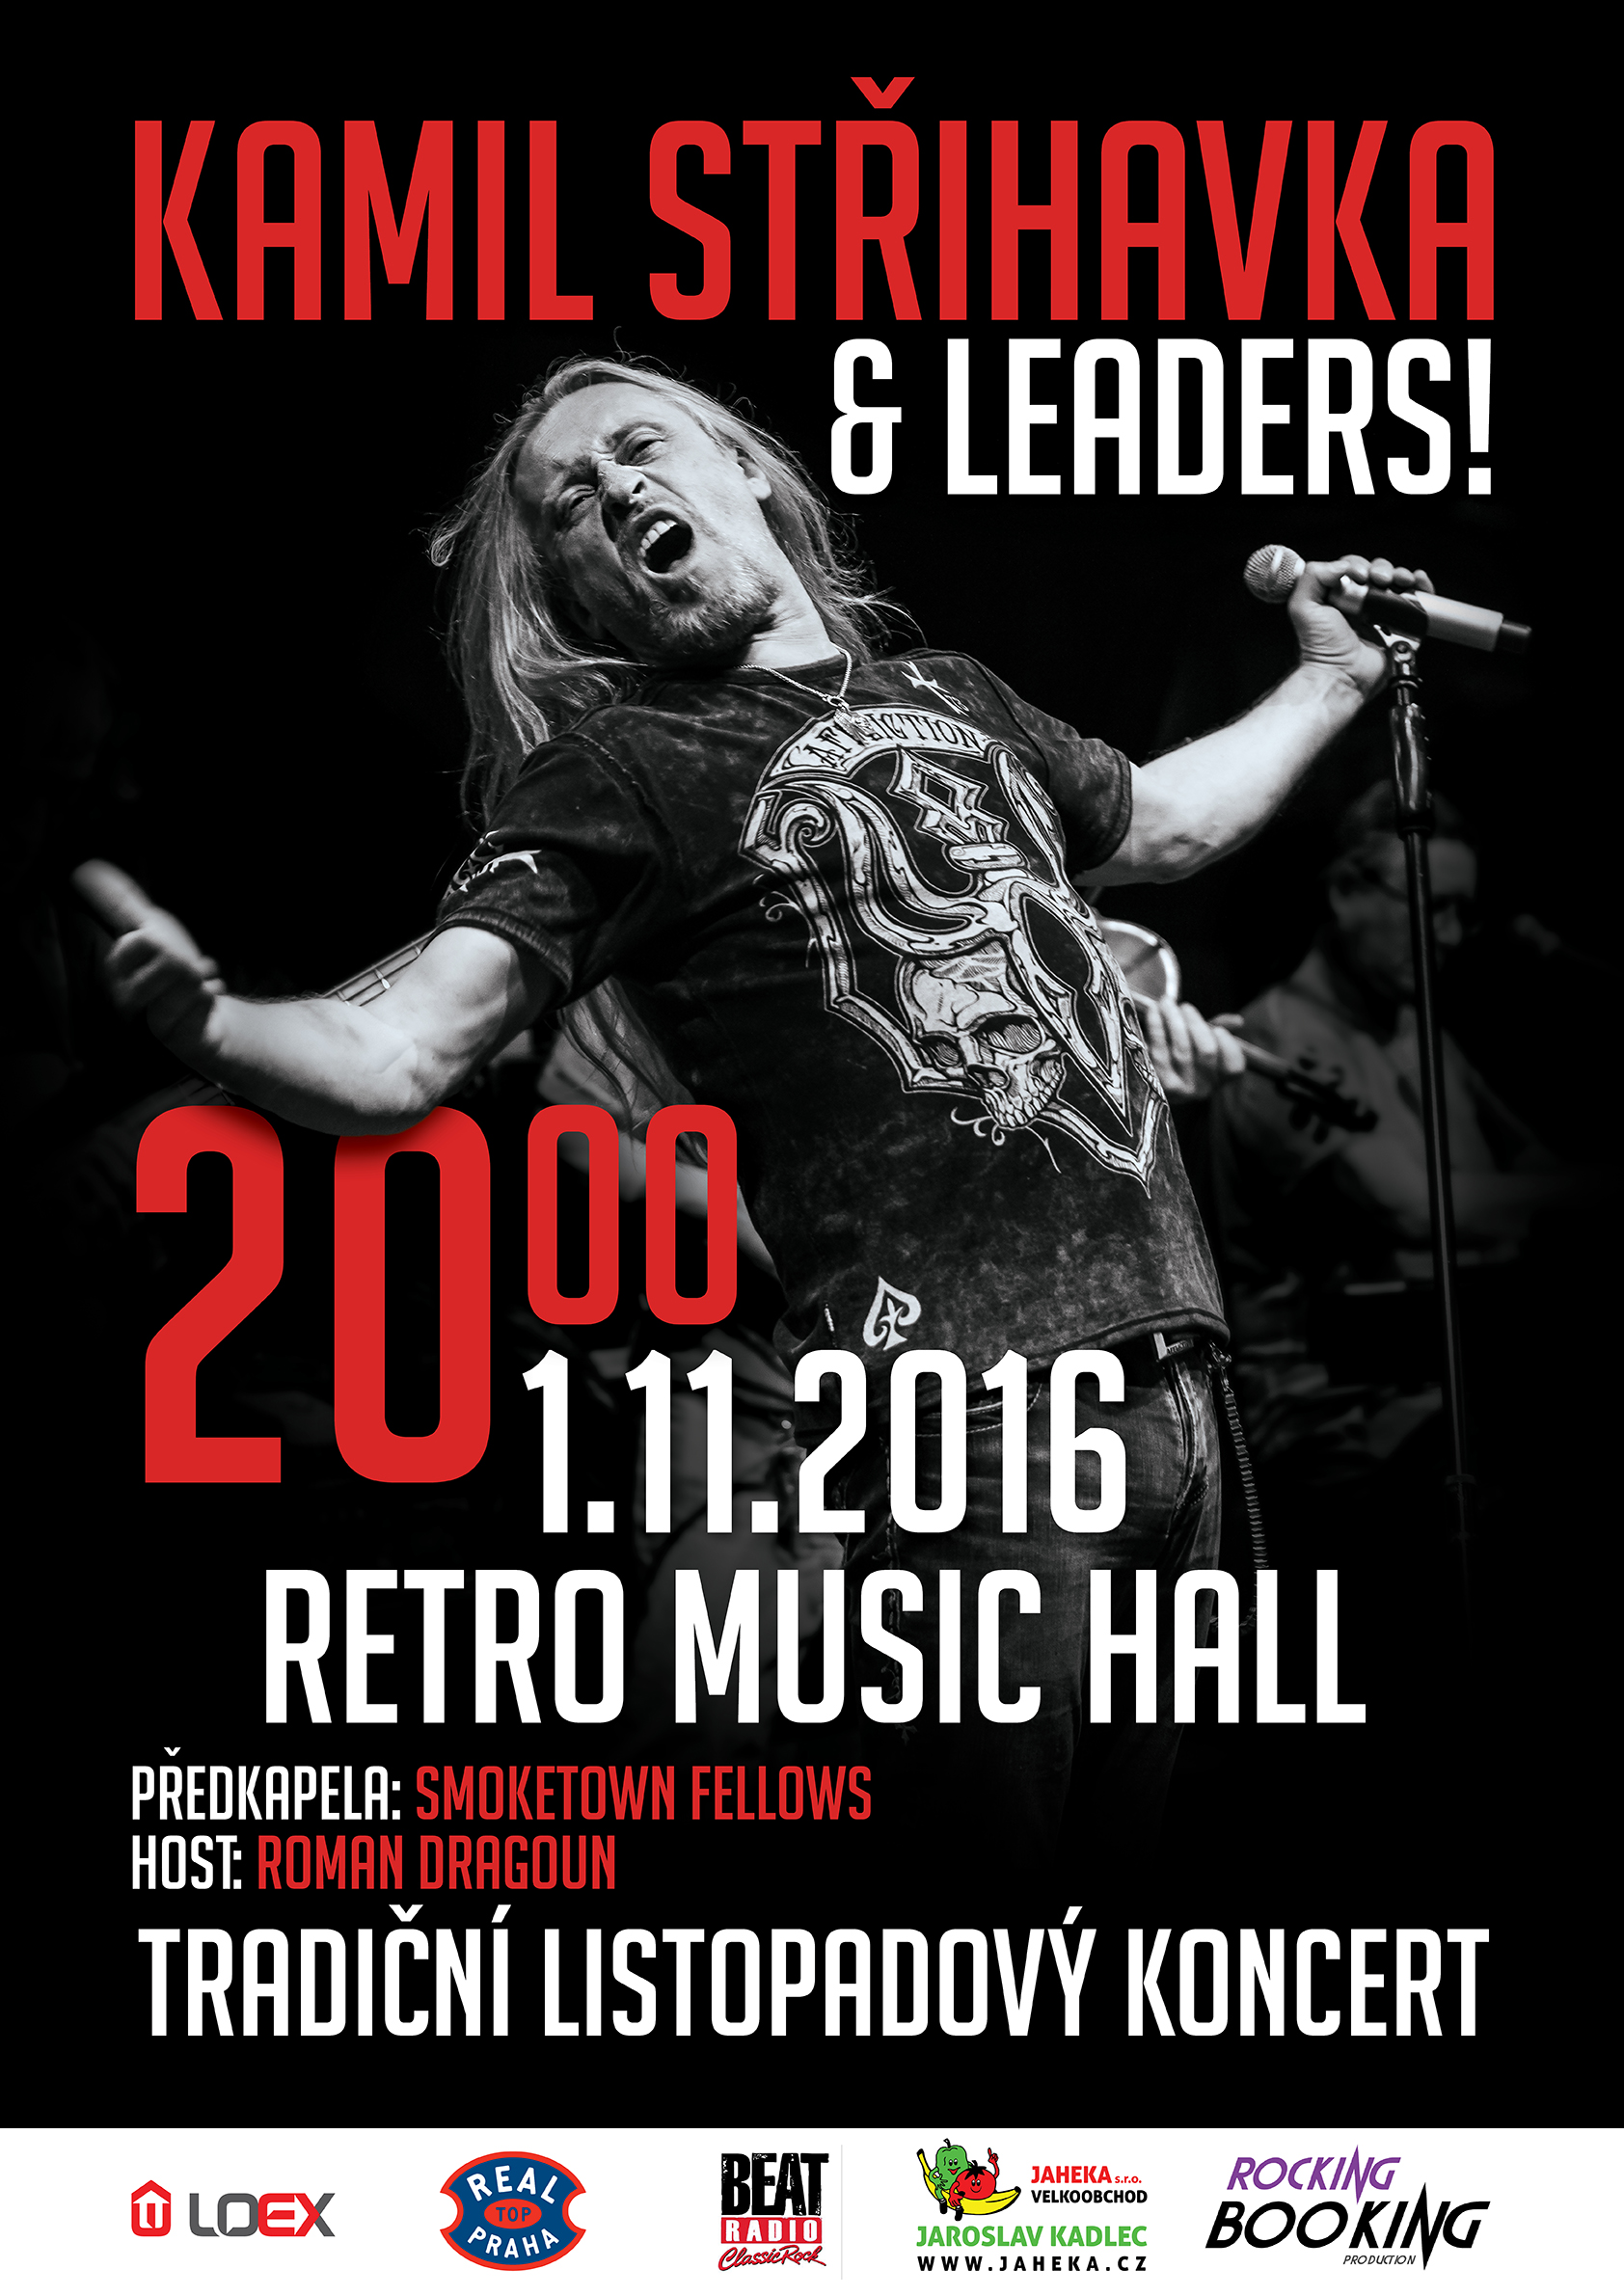 Kamil Střihavka už dnes v Retro Music Hall